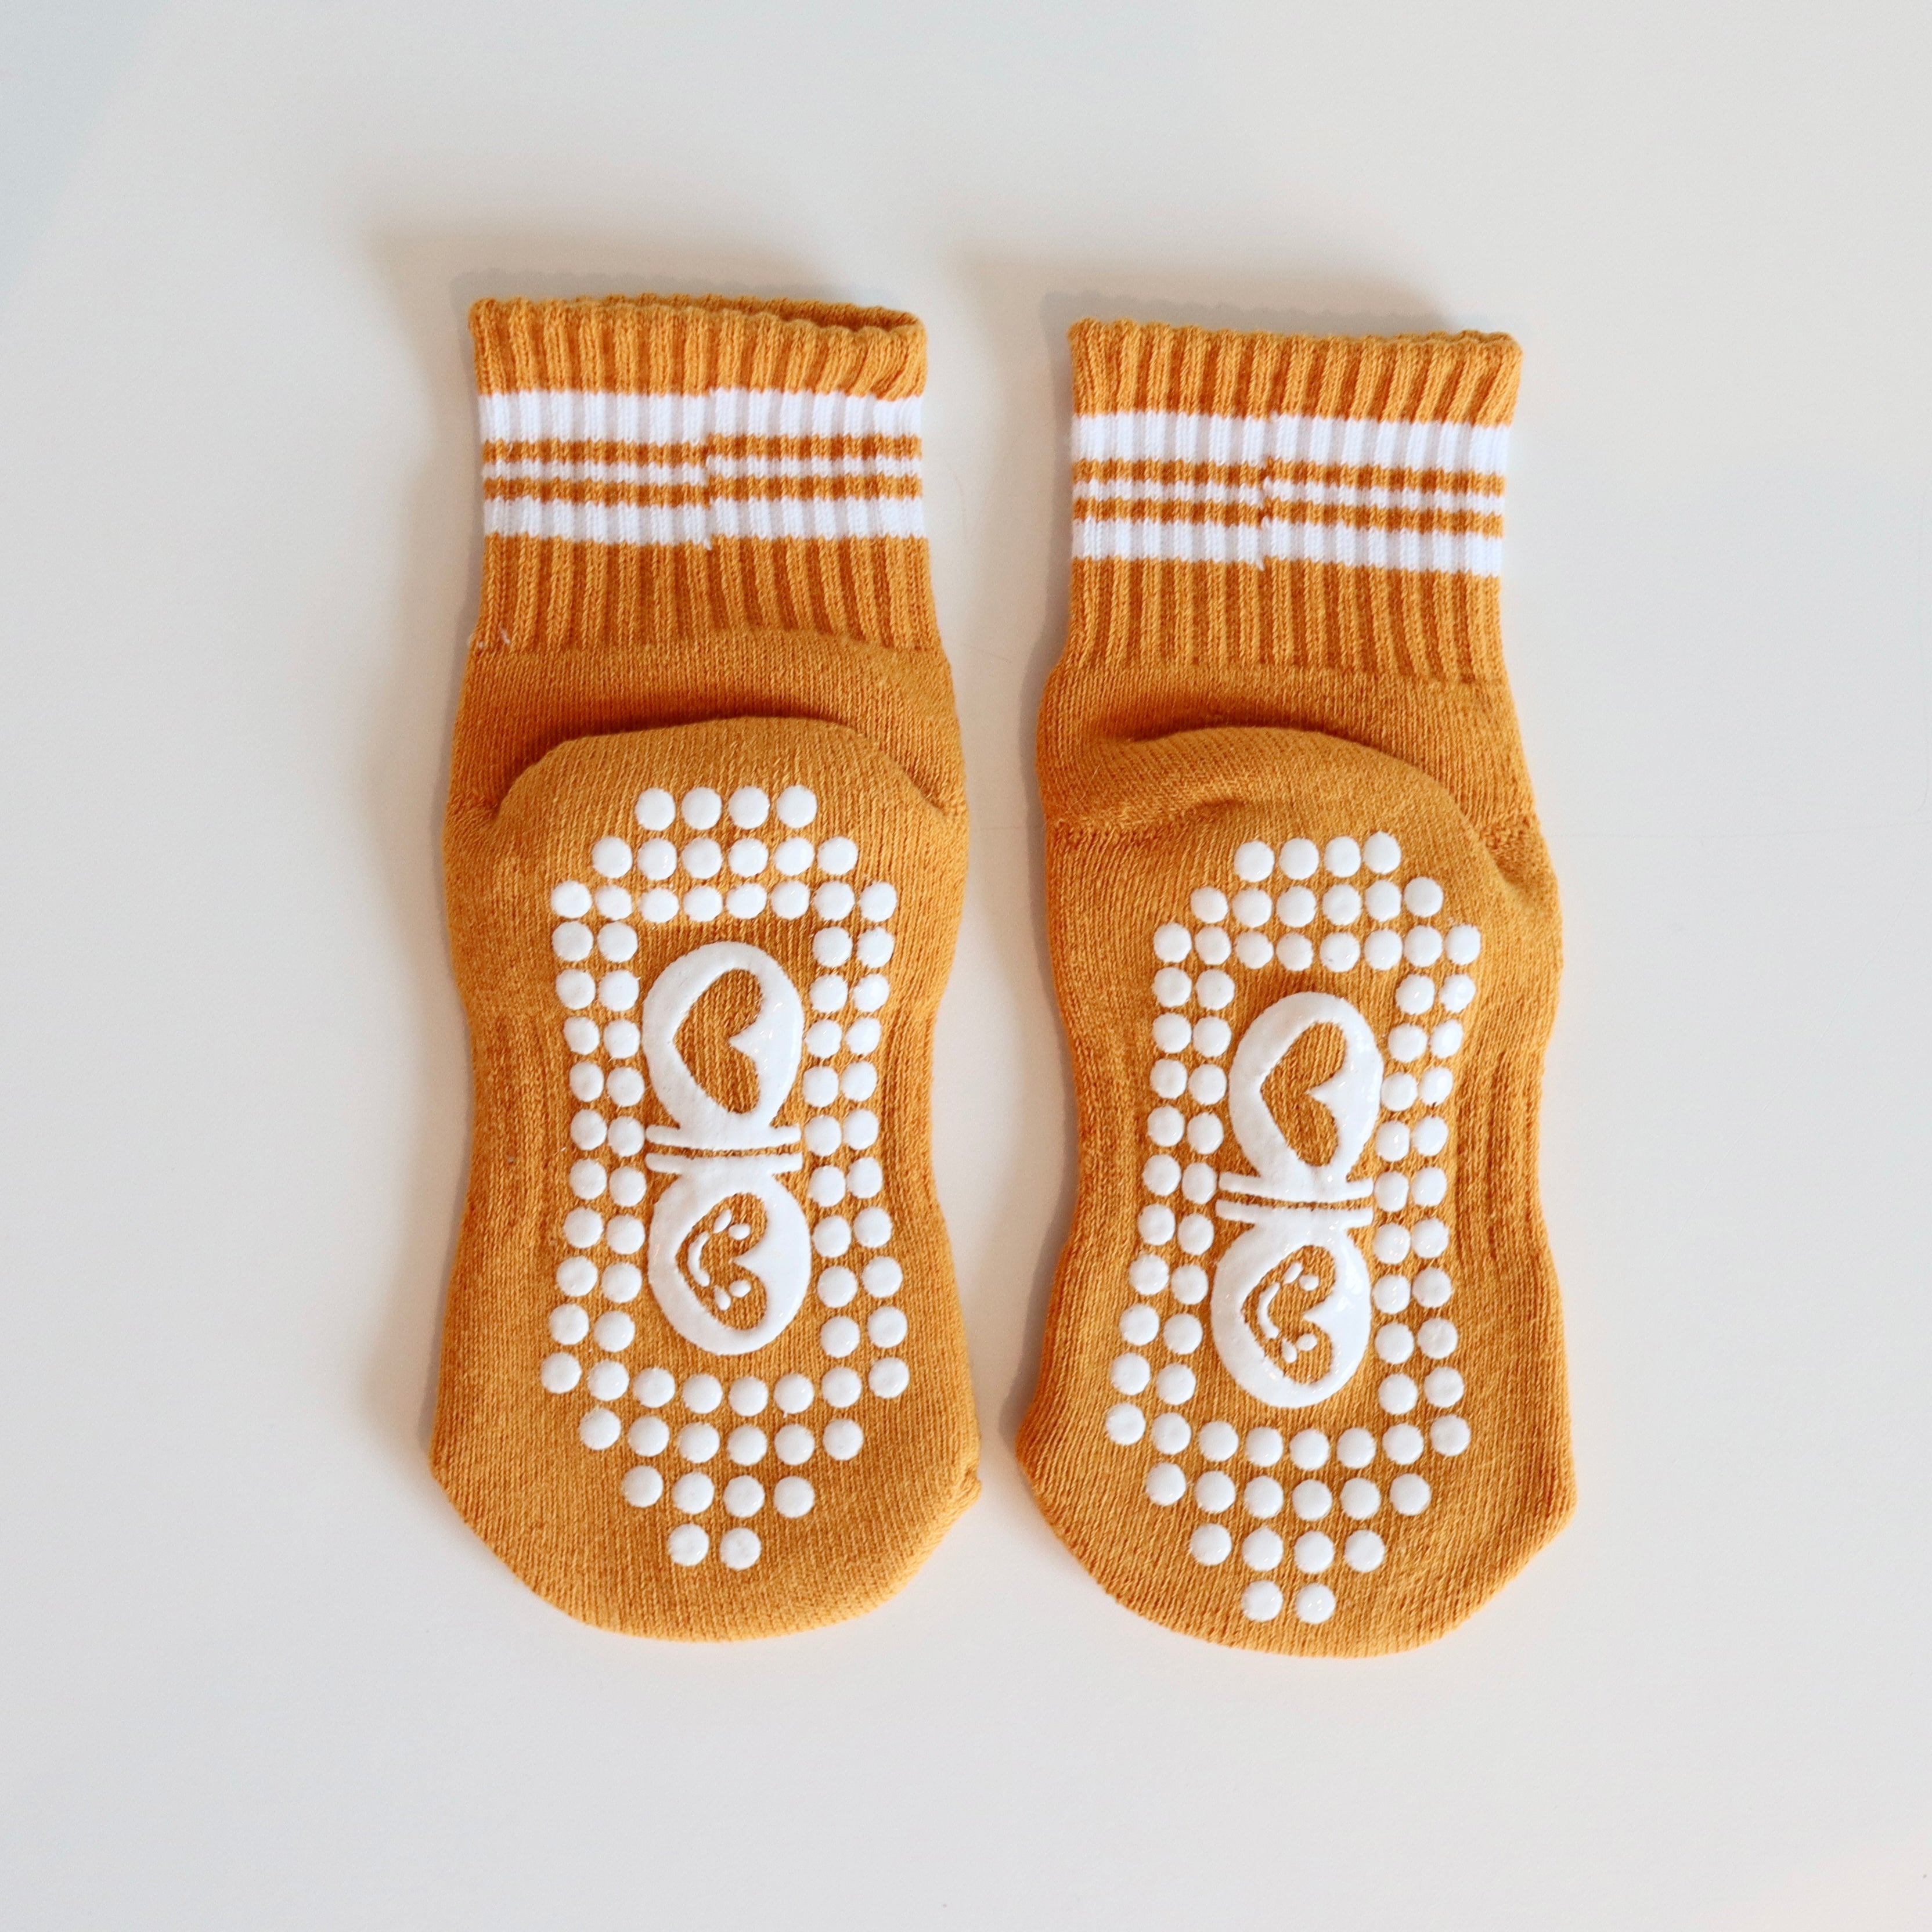 Ephemeral Kids Grip Socks - Pack of 4 (Colors & Design May Vary) (2-3 Years)